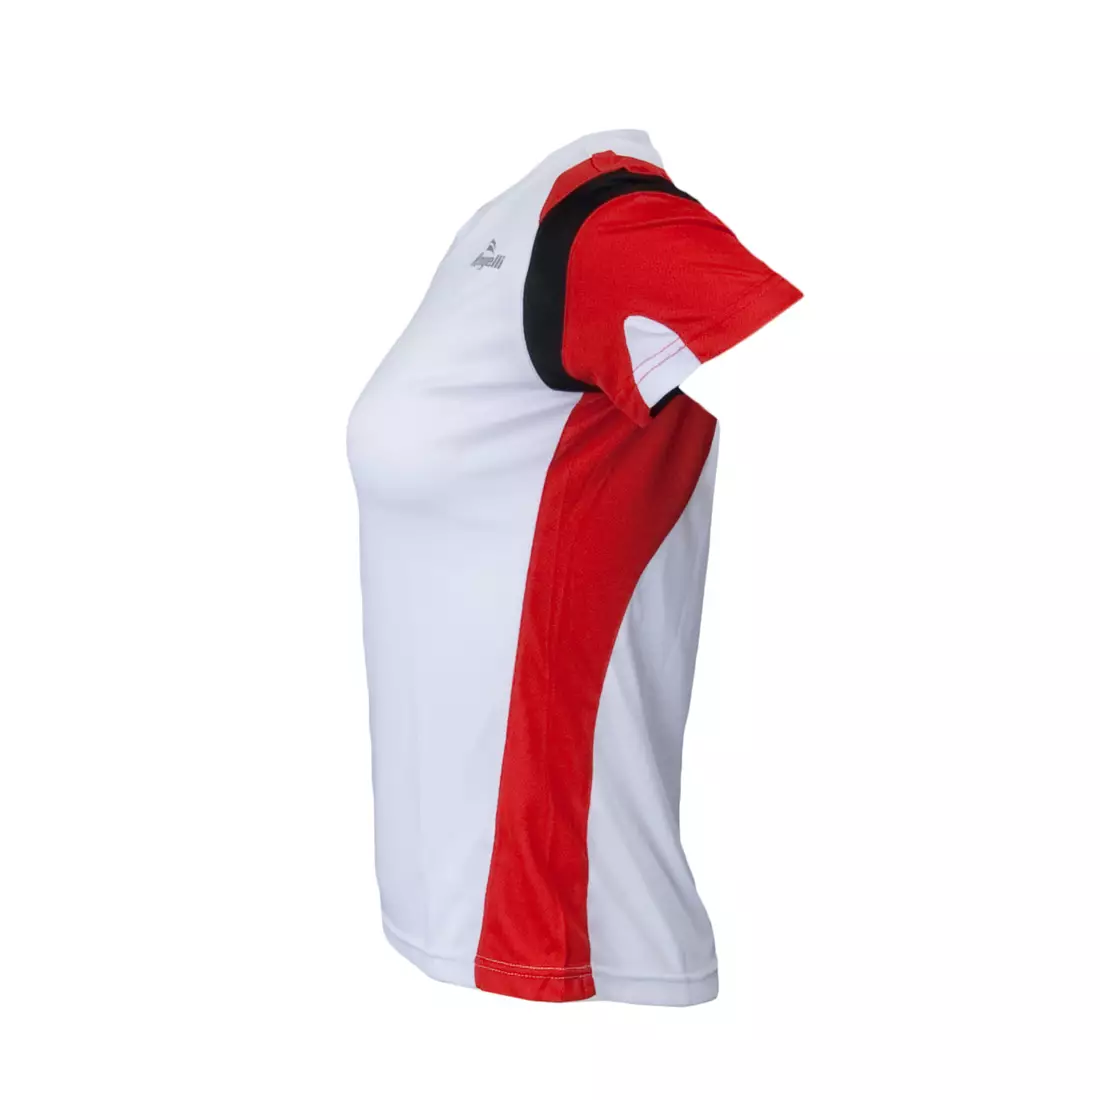 ROGELLI RUN EABEL - lehké dámské běžecké tričko, krátké rukávy